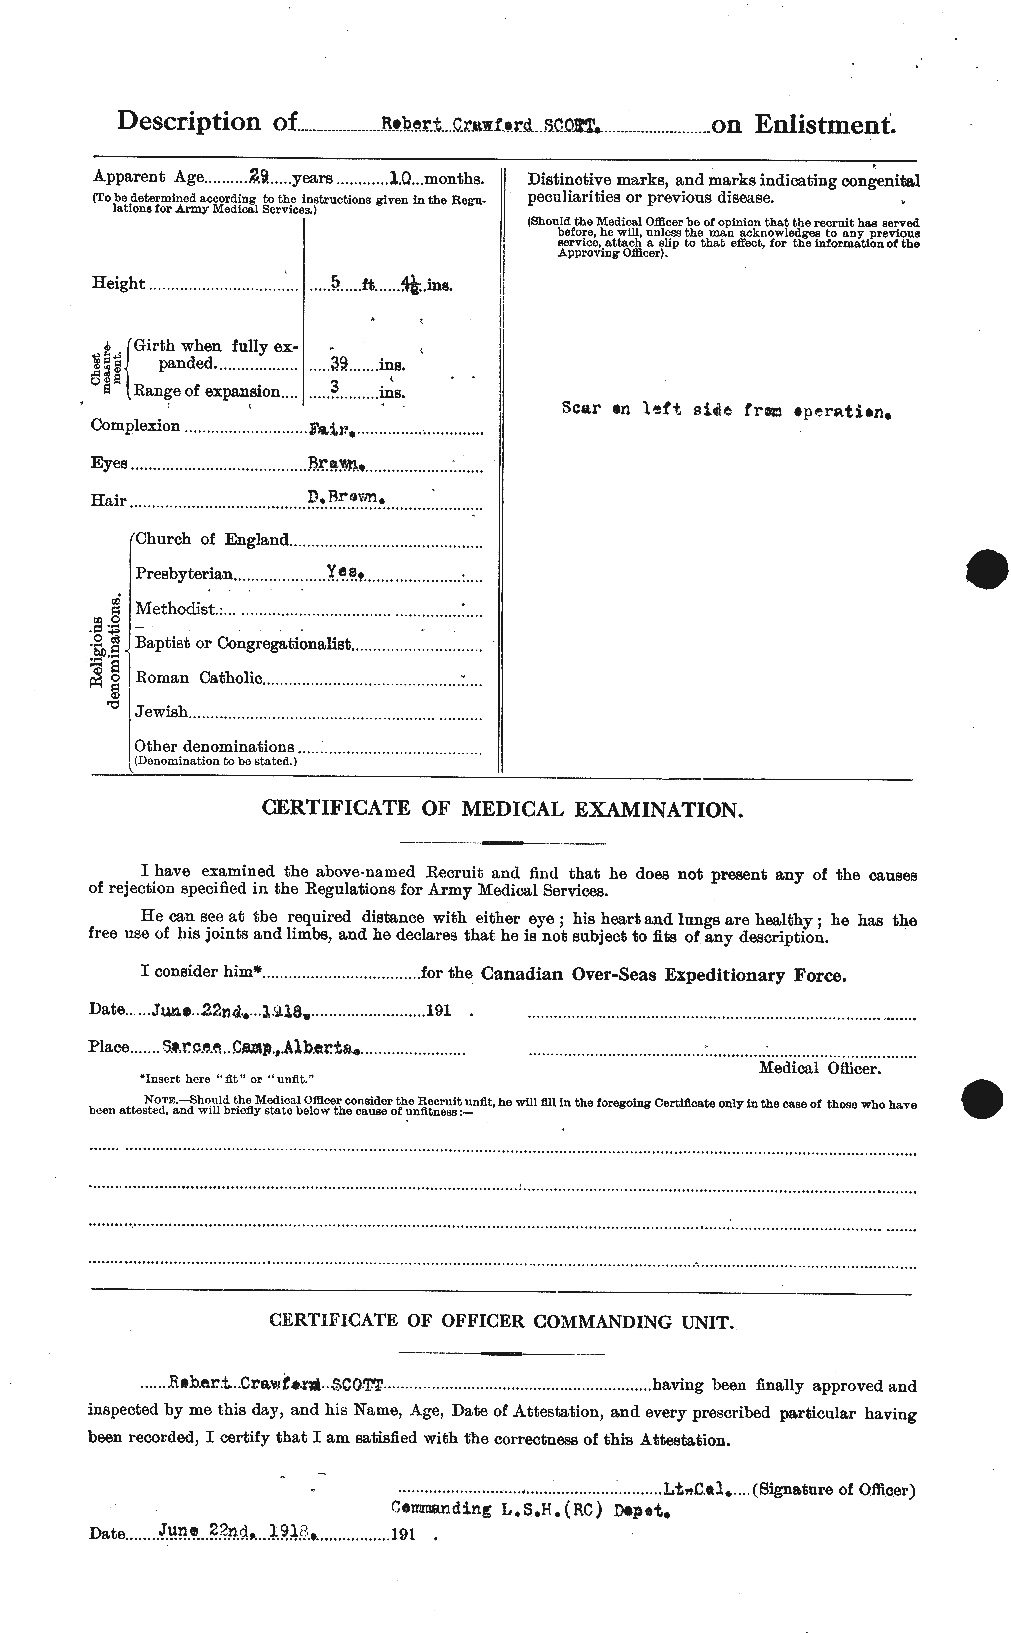 Dossiers du Personnel de la Première Guerre mondiale - CEC 089153b